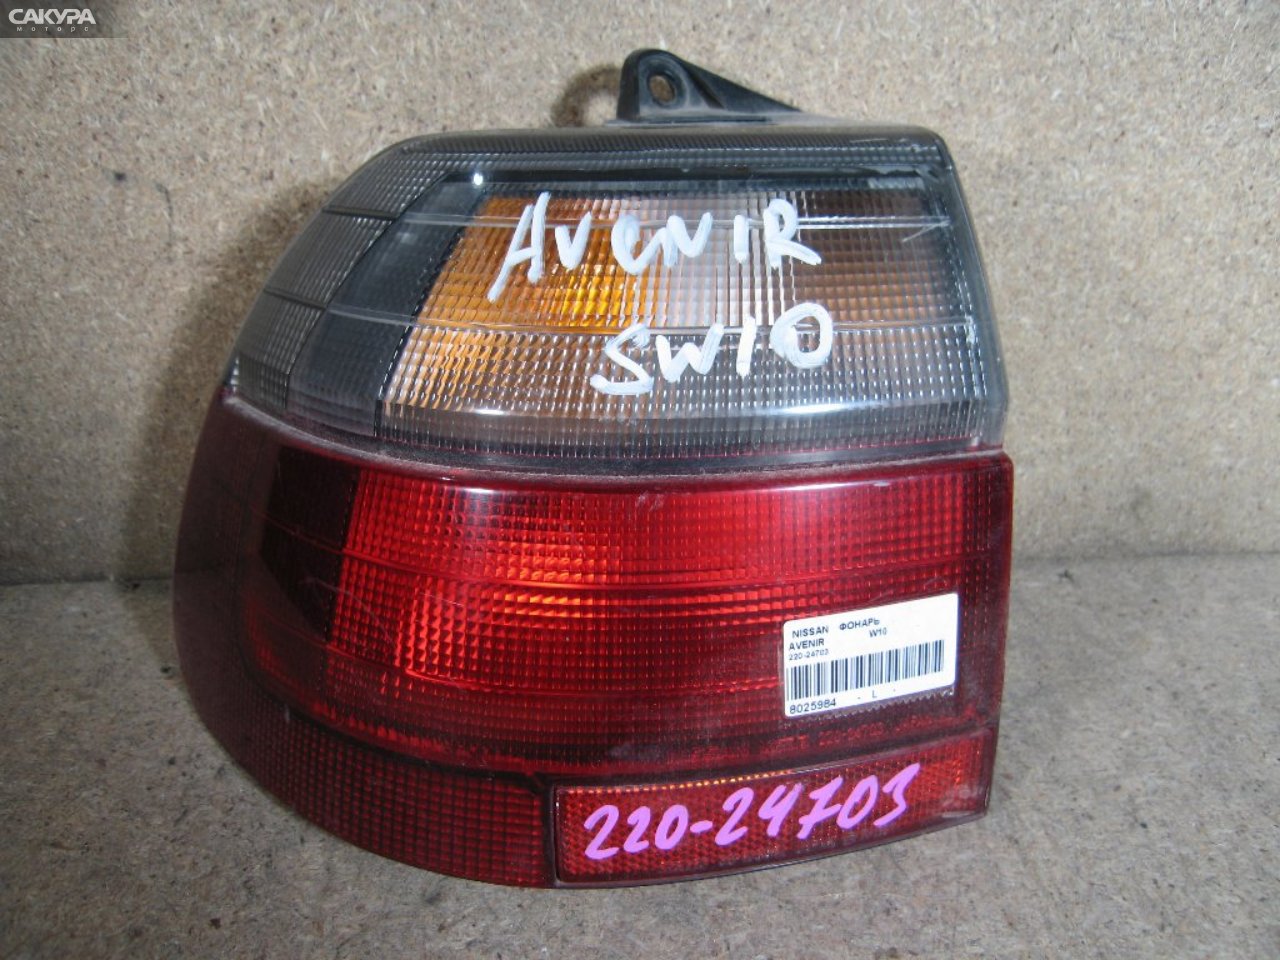 Фонарь стоп-сигнала левый Nissan Avenir W10 220-24703: купить в Сакура Абакан.